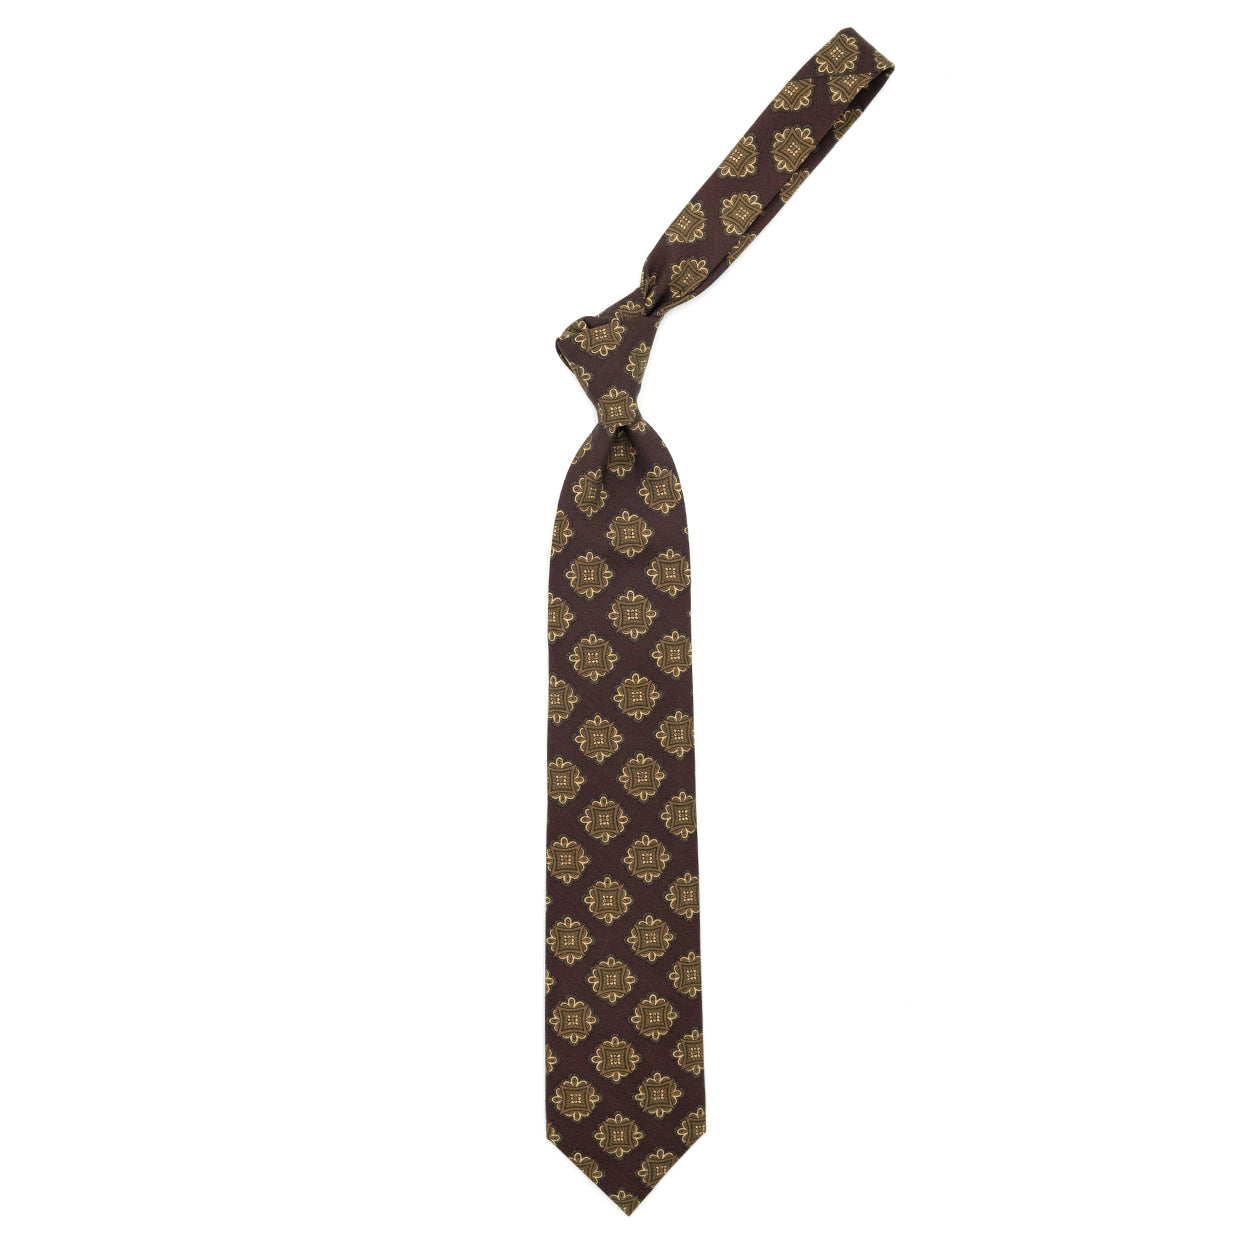 Cravatta bordeaux con medaglioni marroni, beige e verdi